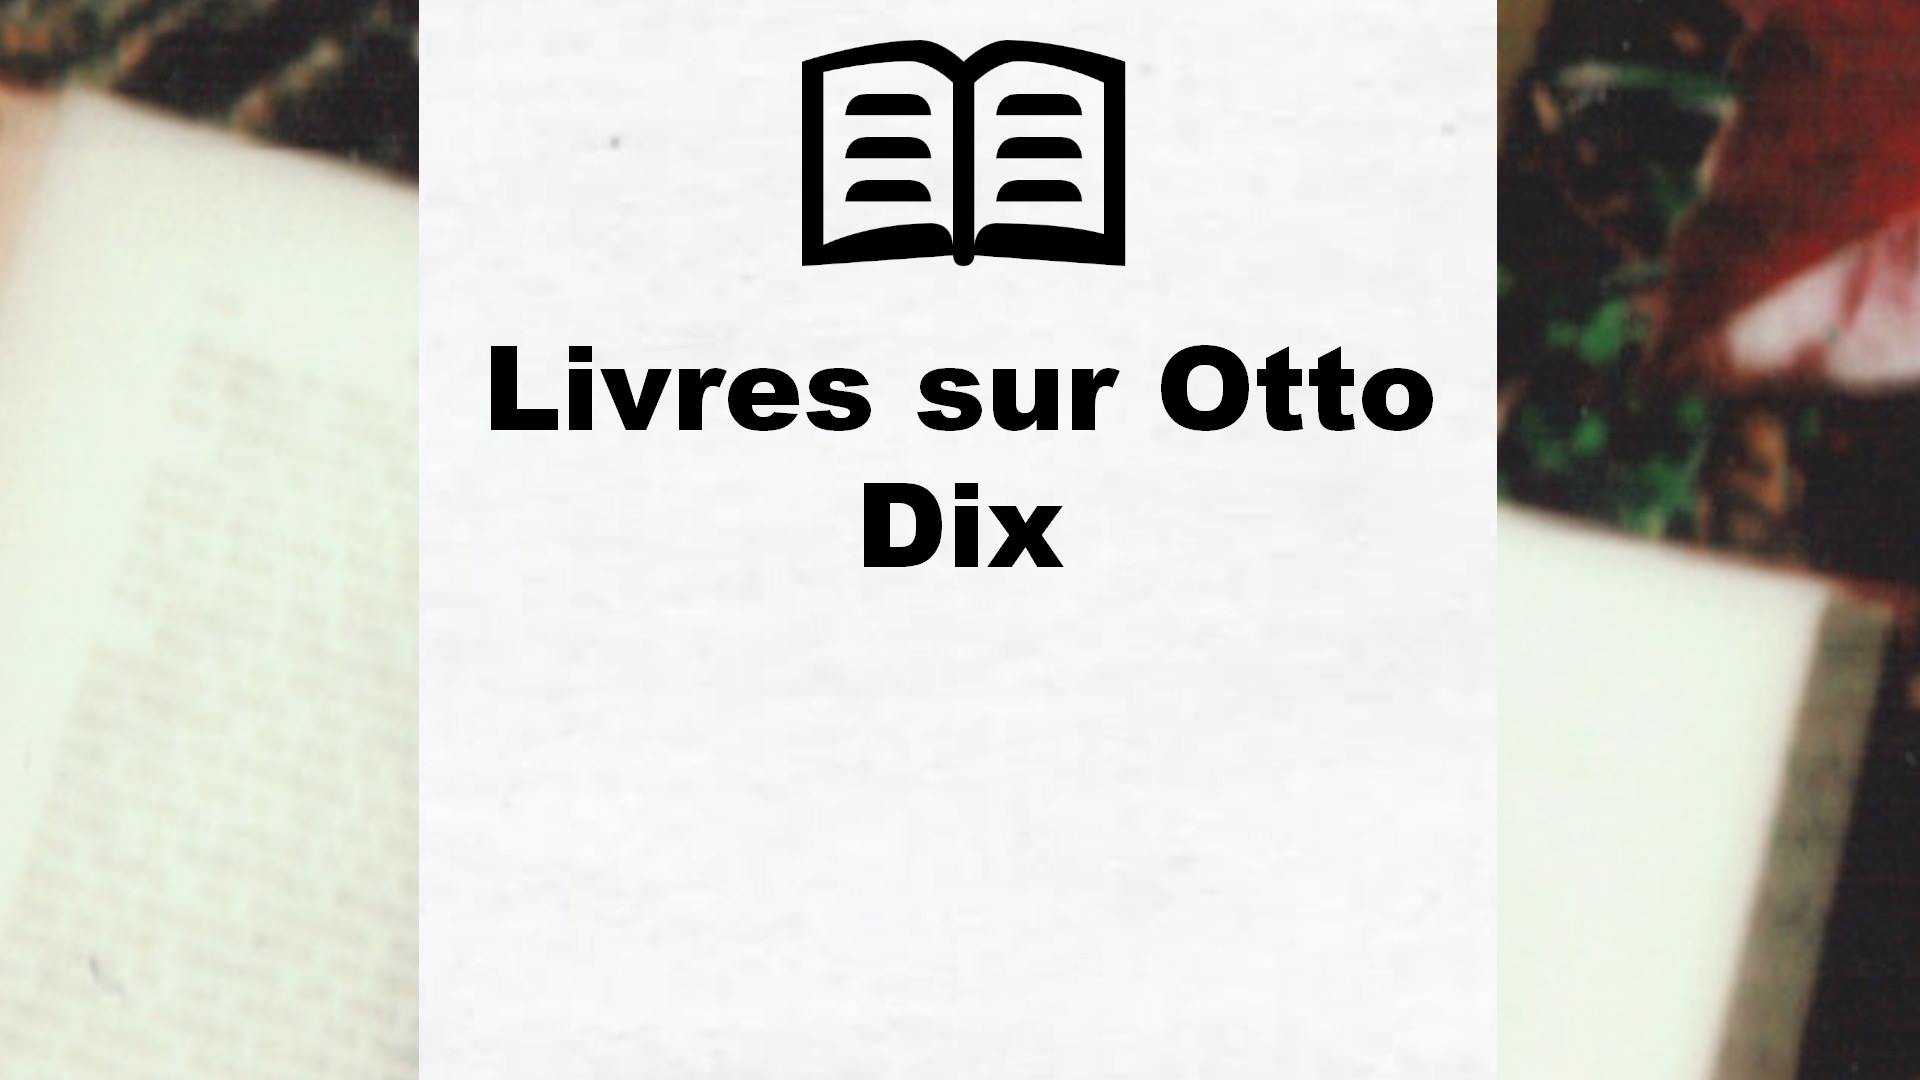 Livres sur Otto Dix